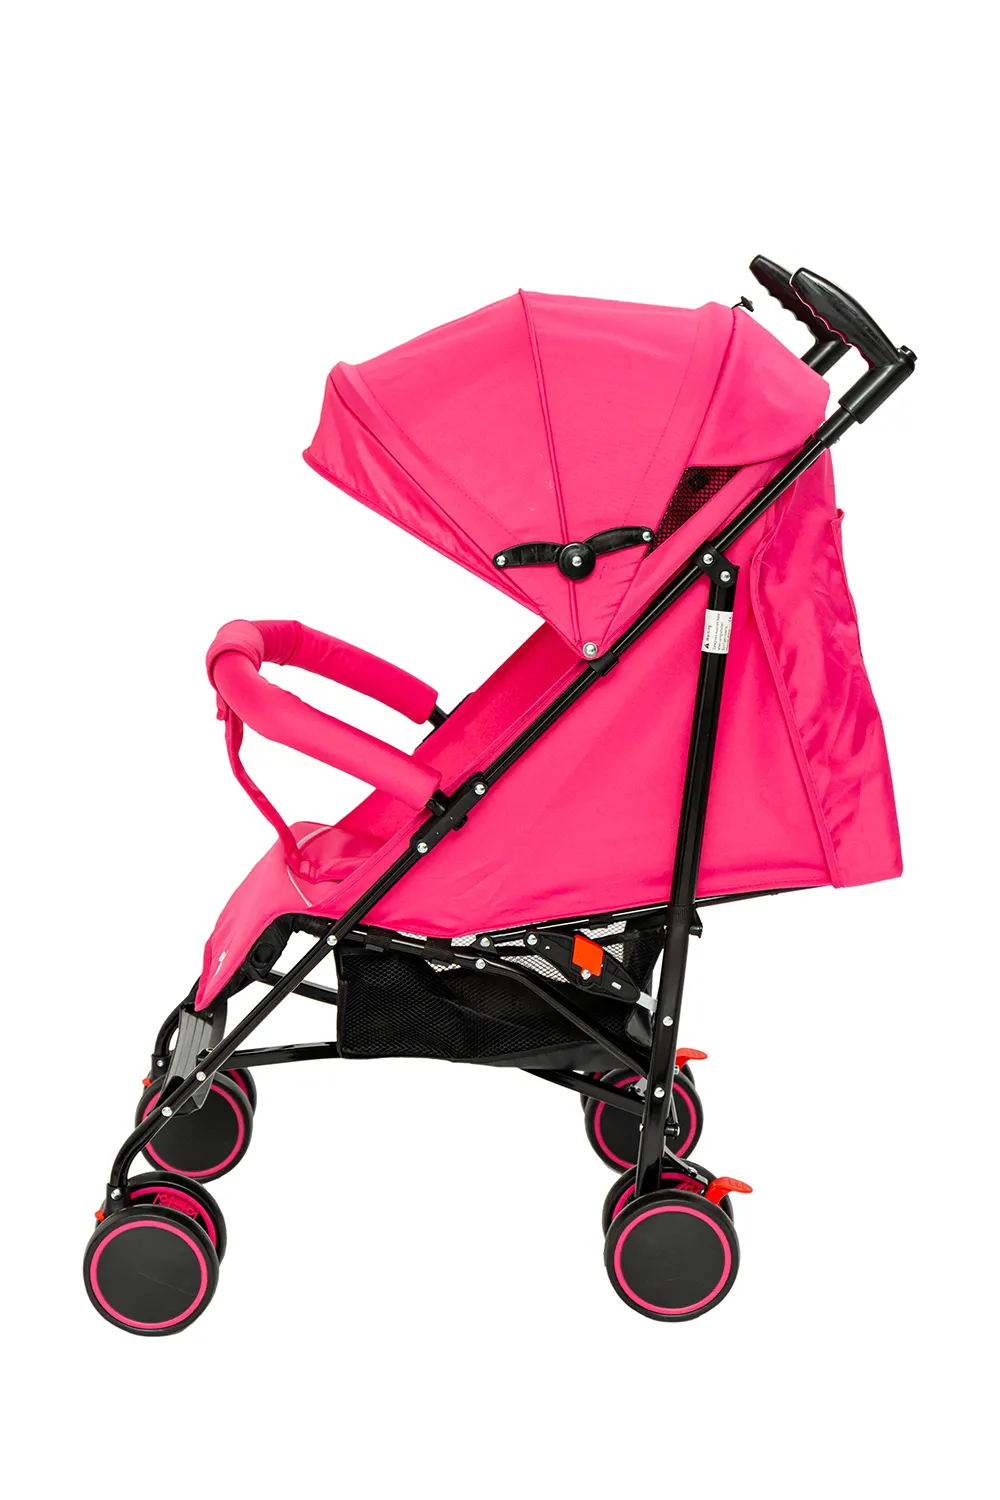 Regenschirm-Kinderwagen leichter Reisewagen für Kleinkinder kompakte faltbare Babys Kinder neugeborene